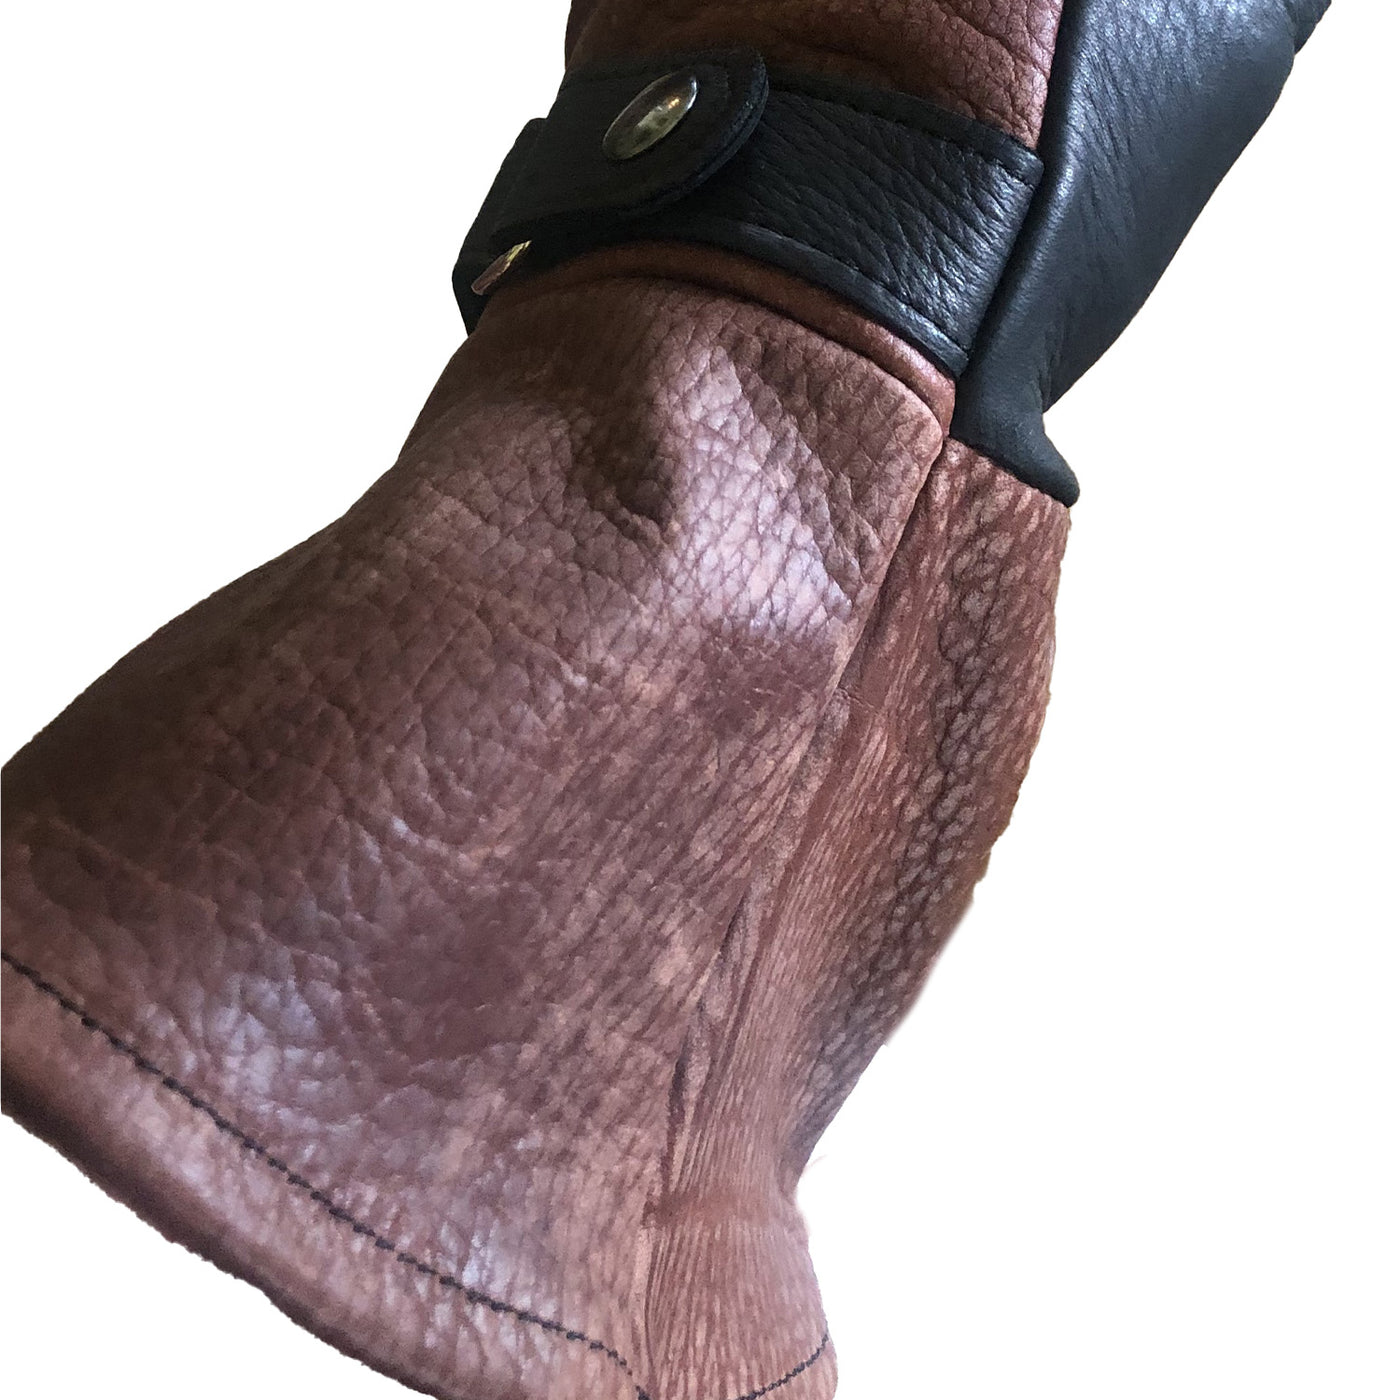 Bison Leather and Deerskin Gauntlet Gloves